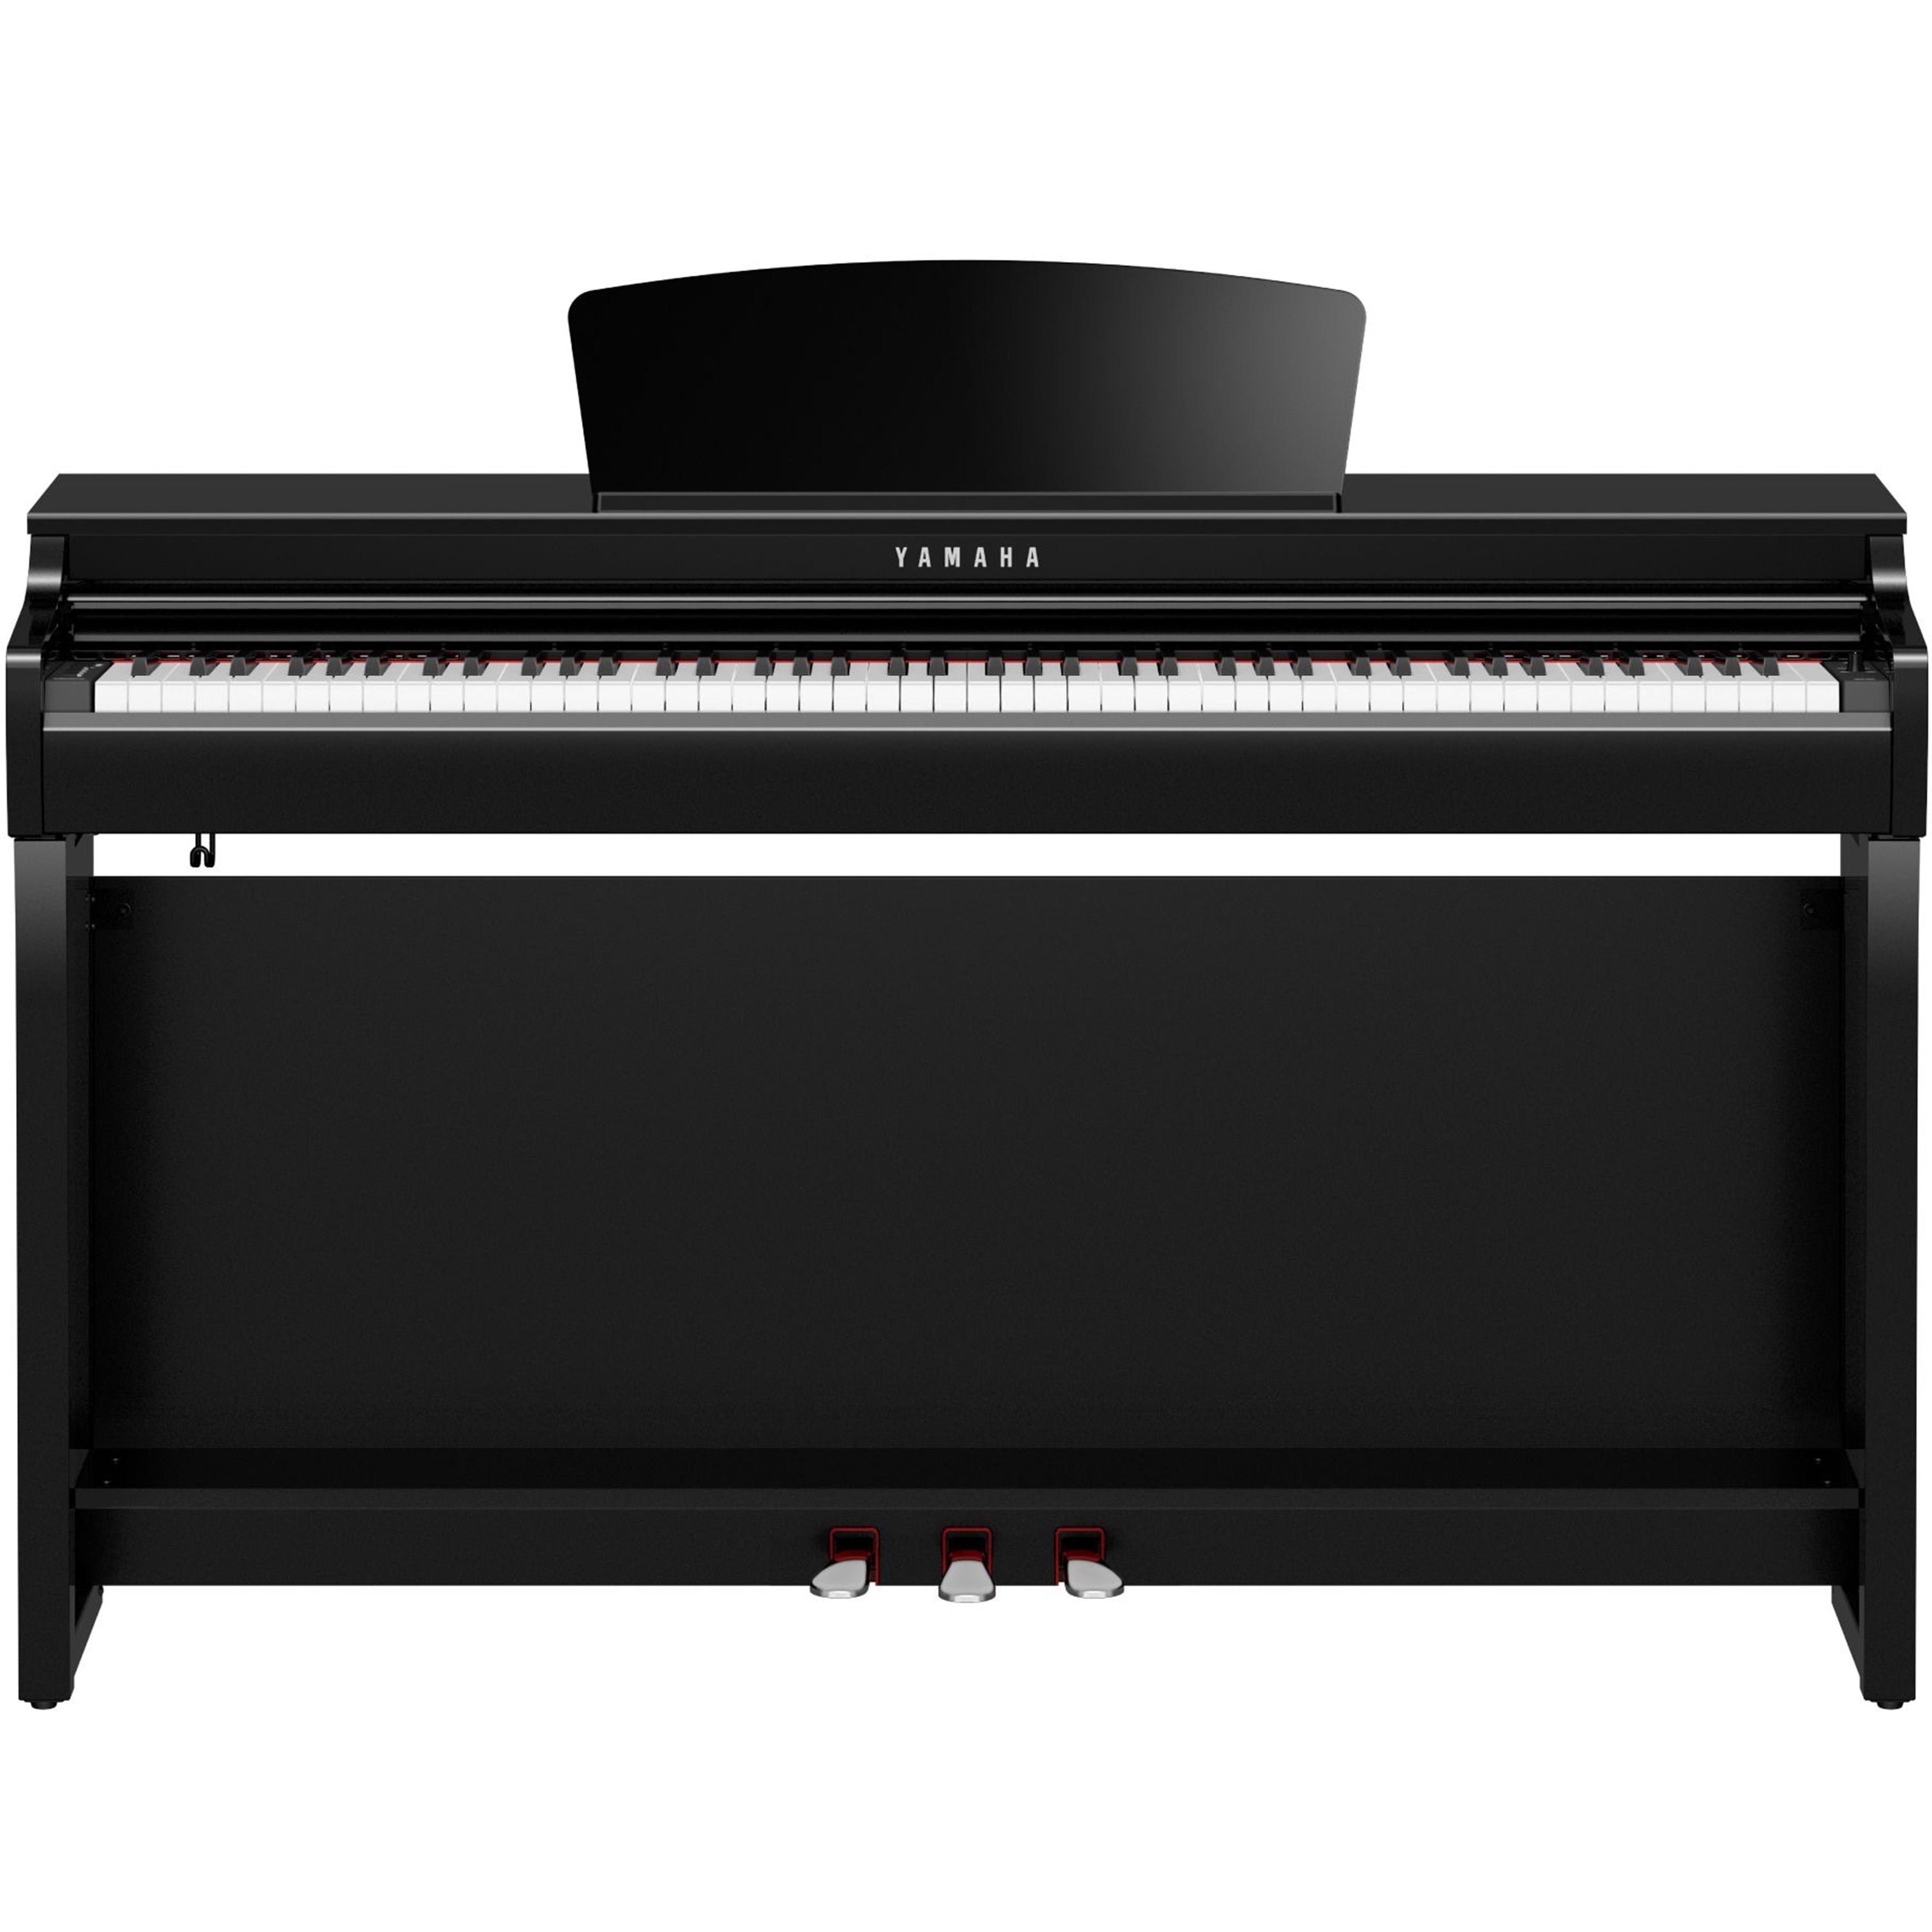 Yamaha Clavinova CLP-725 Digital Piano - Polished Ebony - front view